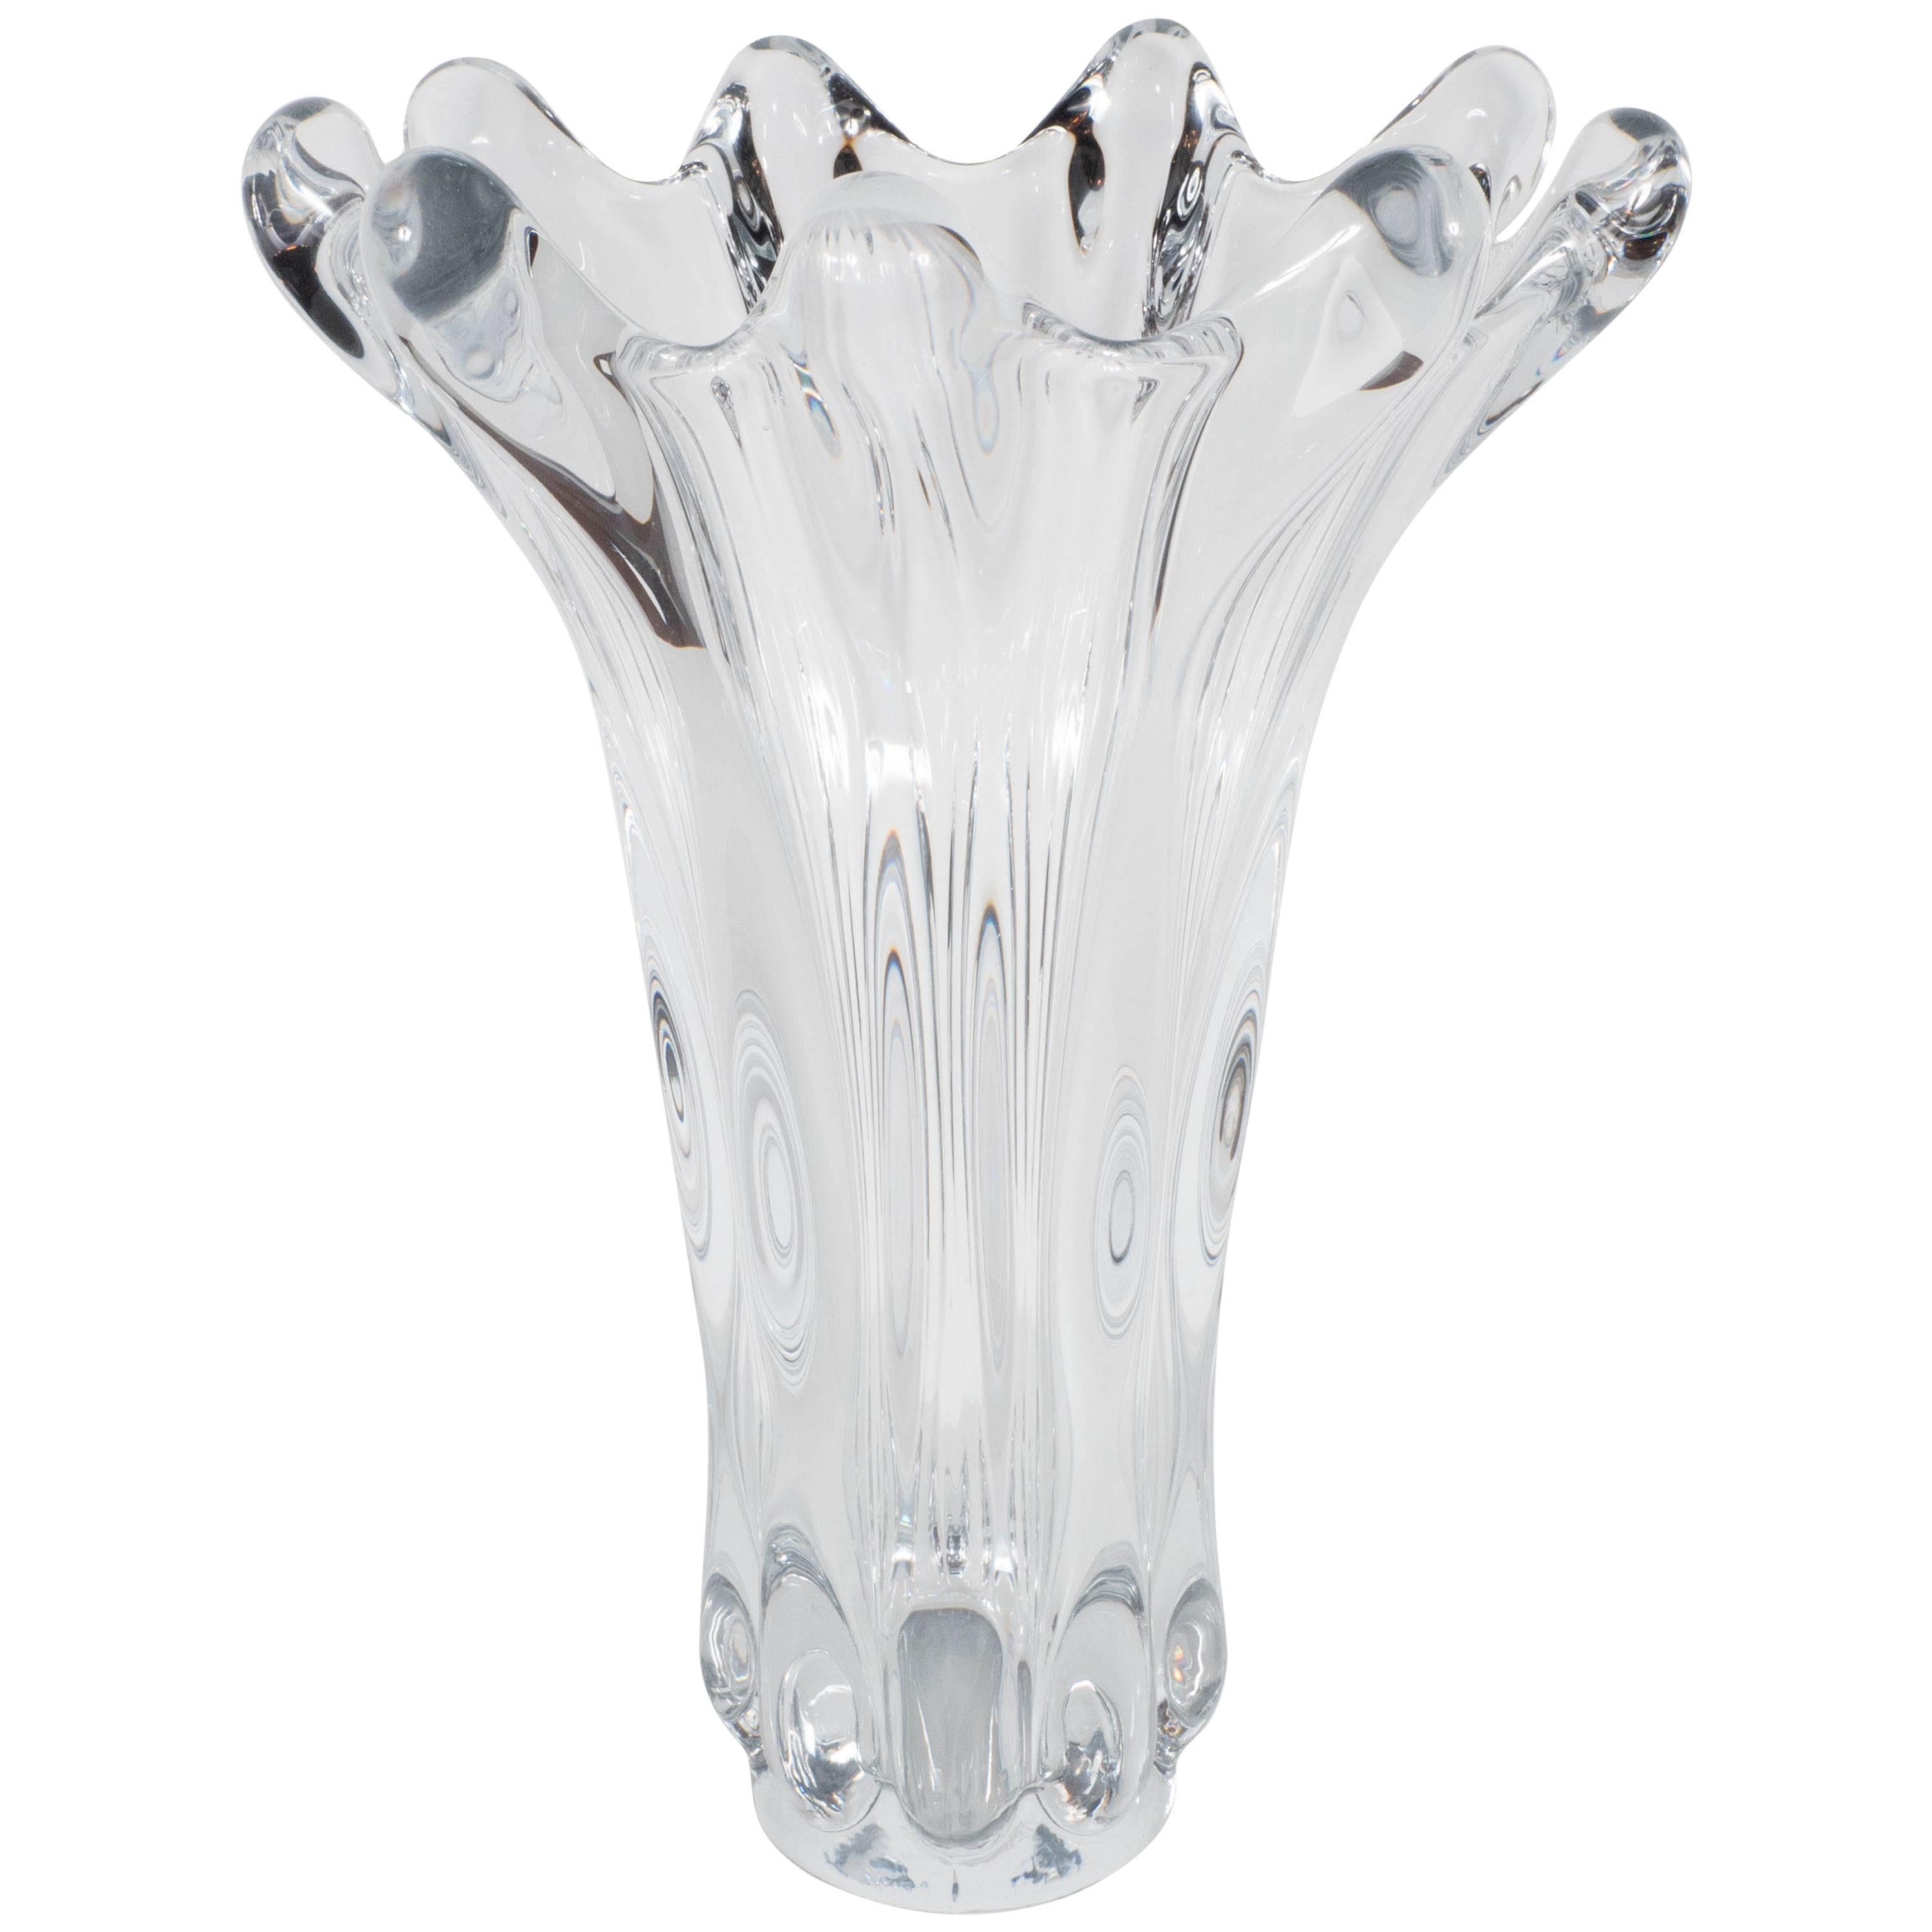 Gorgeous Mid-Century Handblown Crystal Vase by Art Vannes in Floriform Design